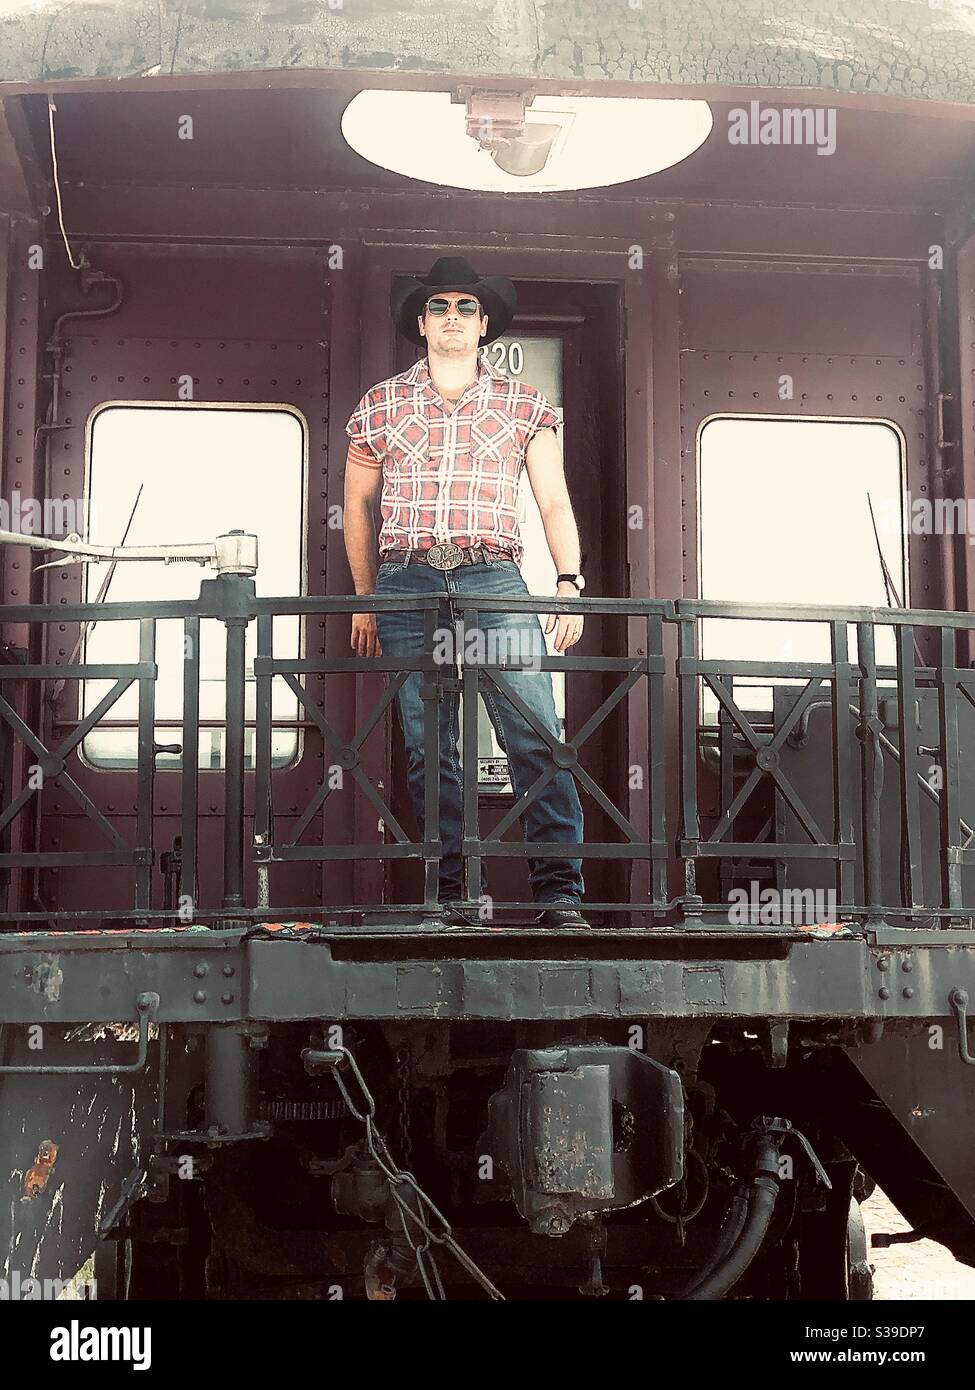 Man on train Stock Photo